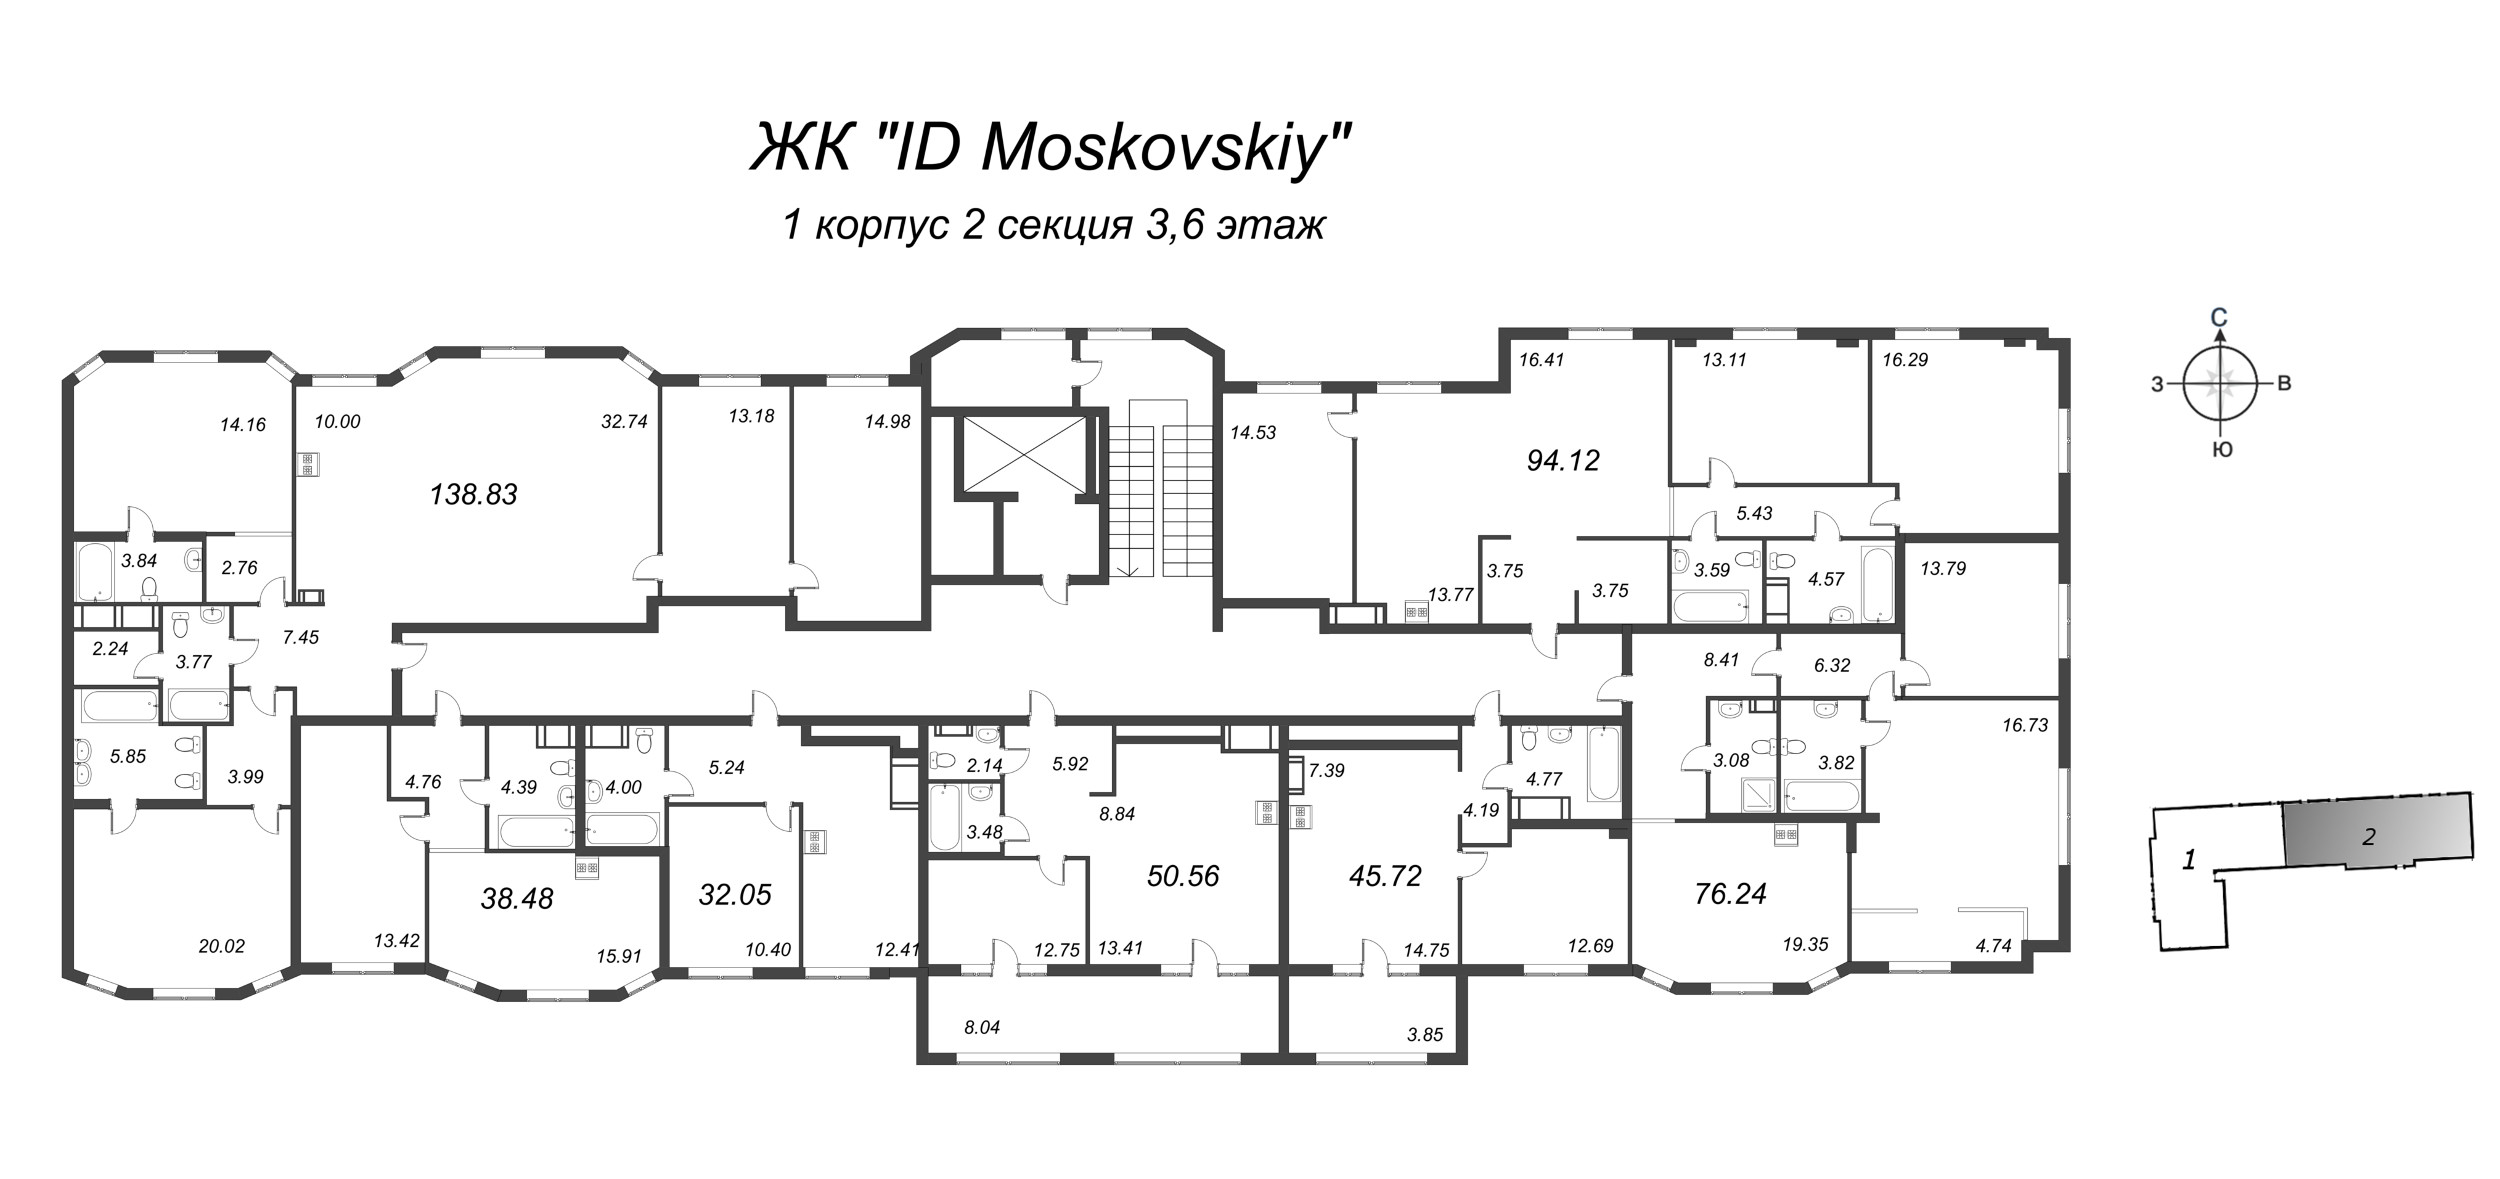 3-комнатная (Евро) квартира, 76.24 м² в ЖК "ID Moskovskiy" - планировка этажа